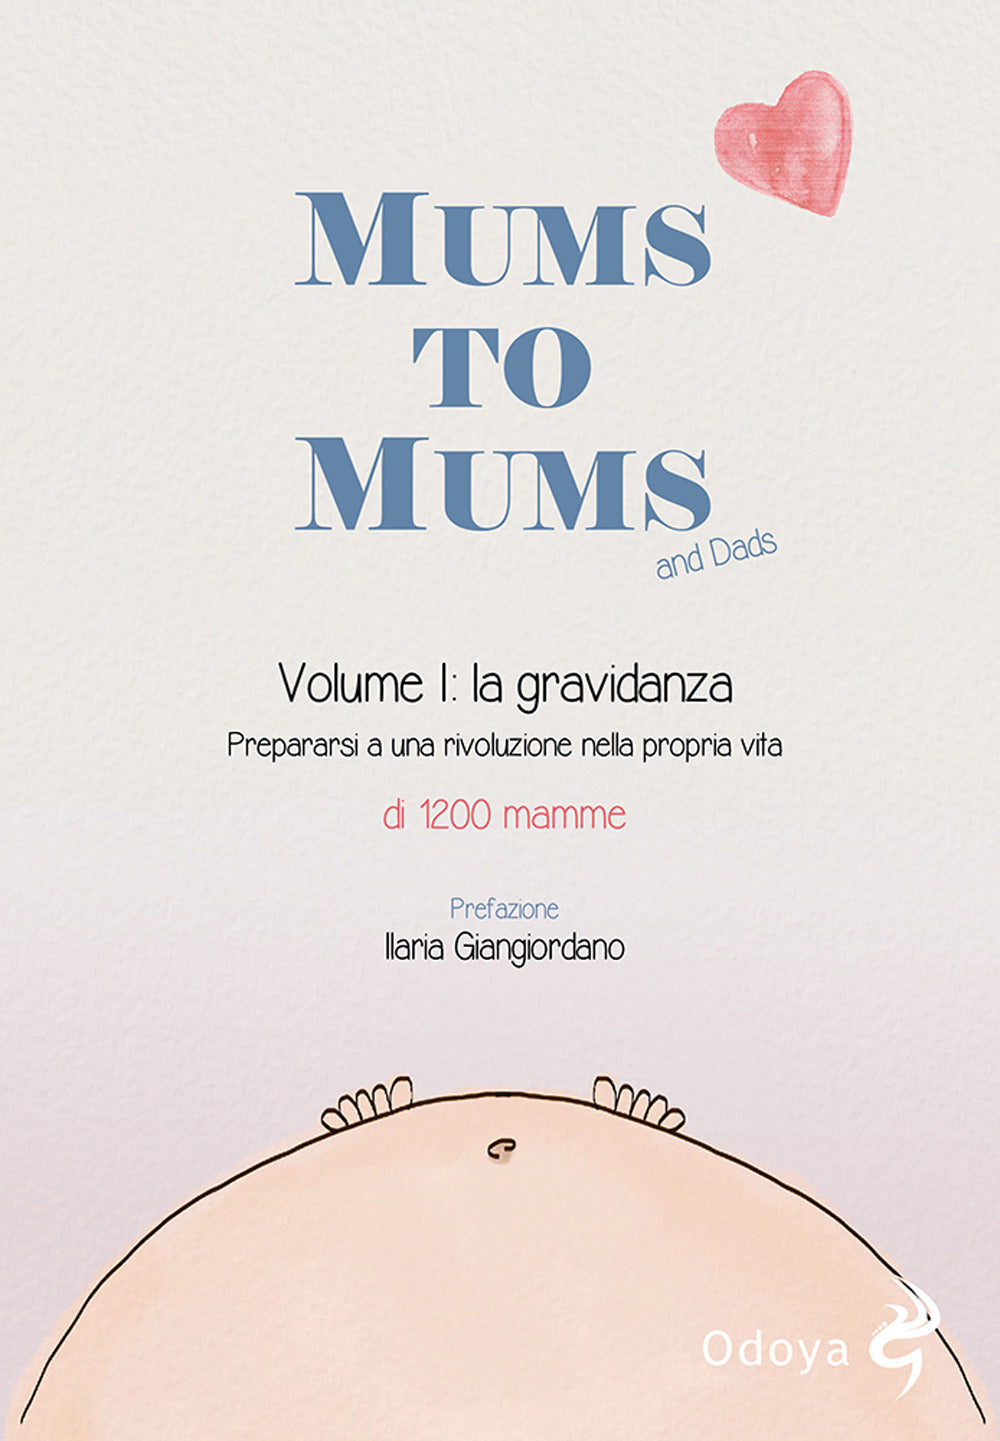 Mums to mums. Vol. 1: La gravidanza. Prepararsi a una rivoluzione nella propria vita.